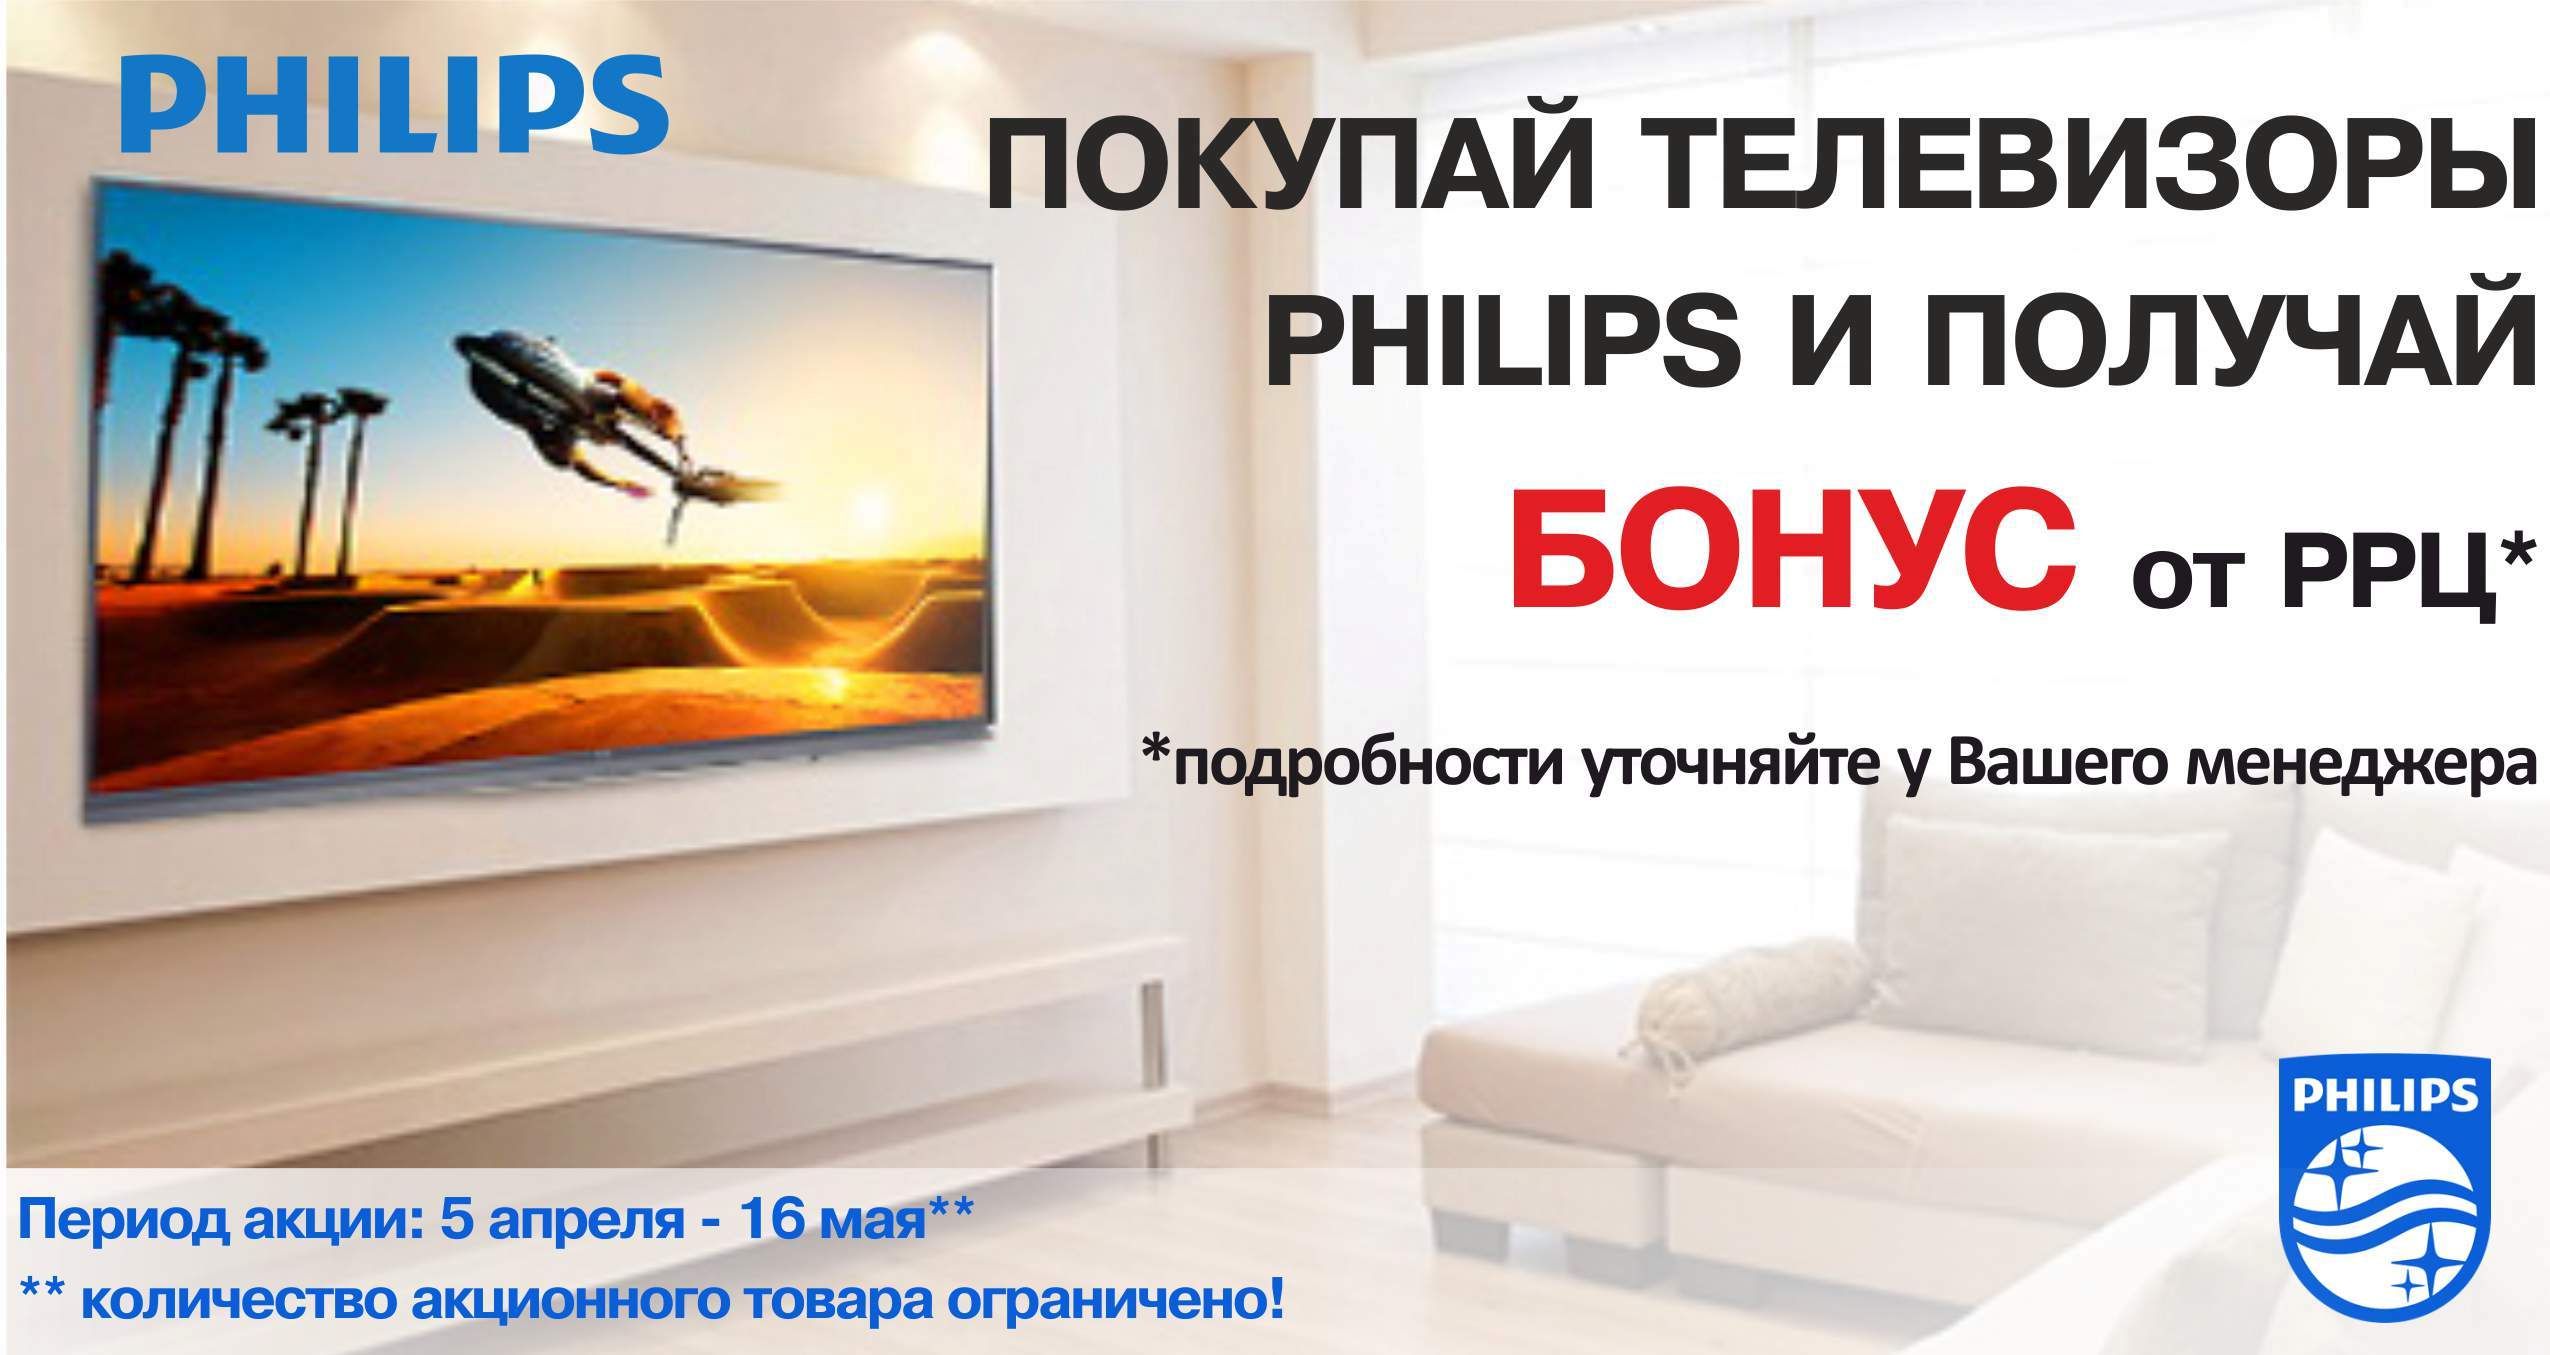 Бонусы за покупку телевизоров Philips